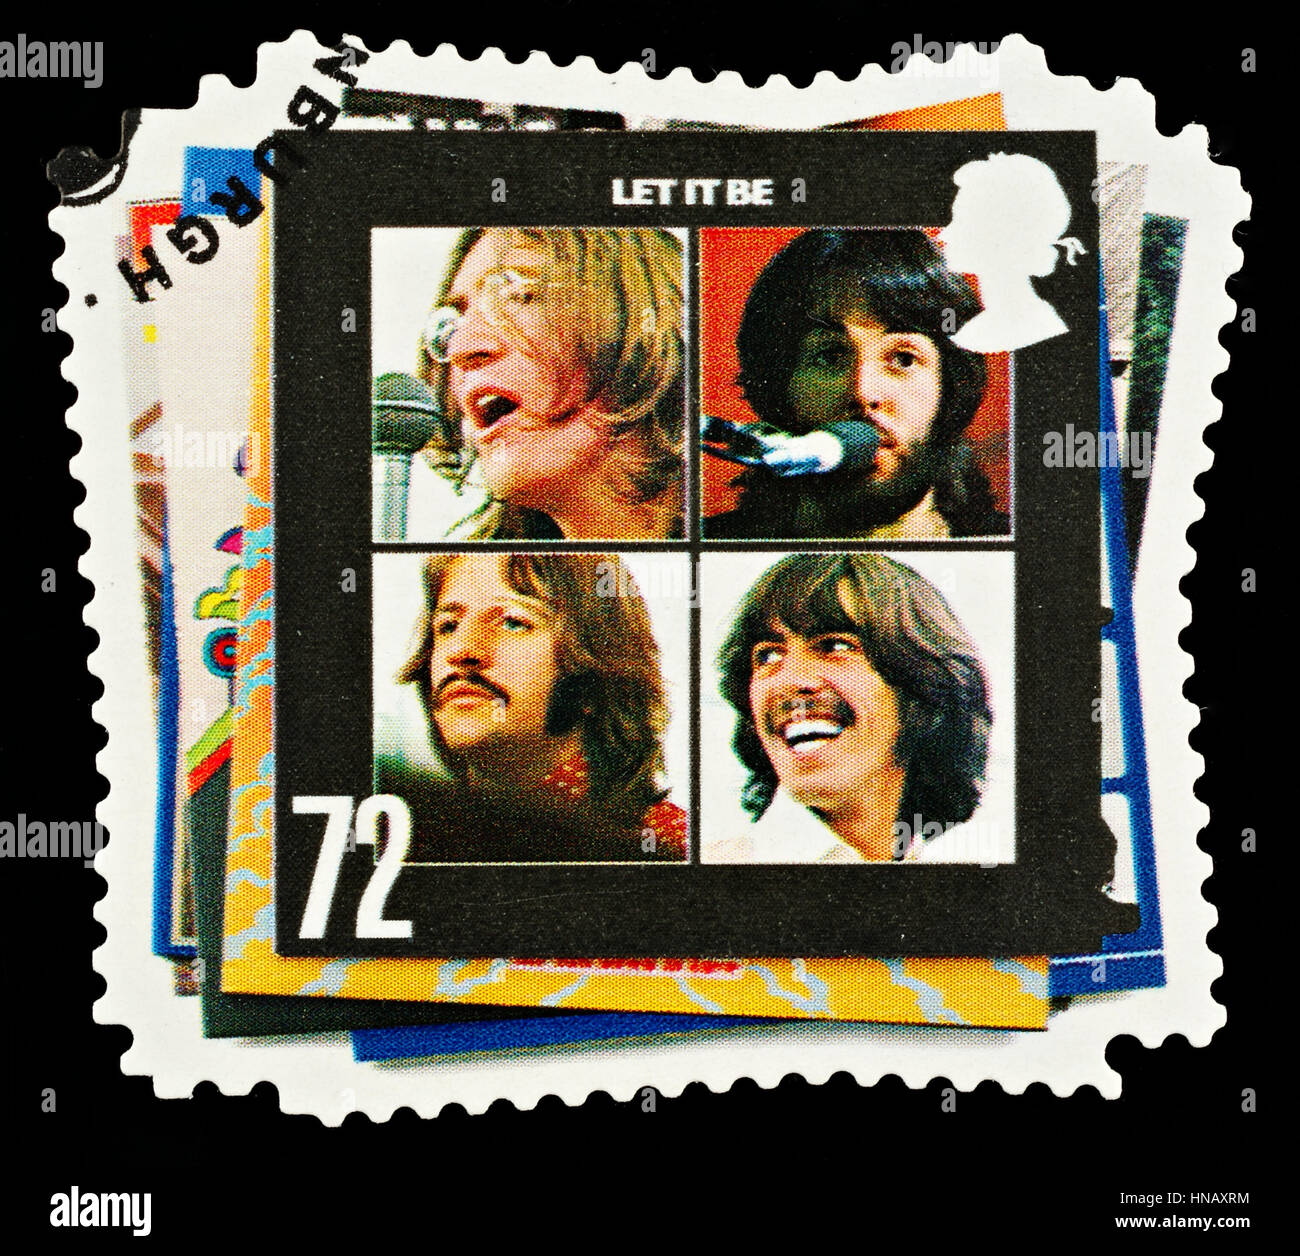 Regno Unito - circa 2007: Un British usato Francobollo che mostra i Beatles gruppo pop e il Let it Be copertina Album Foto Stock